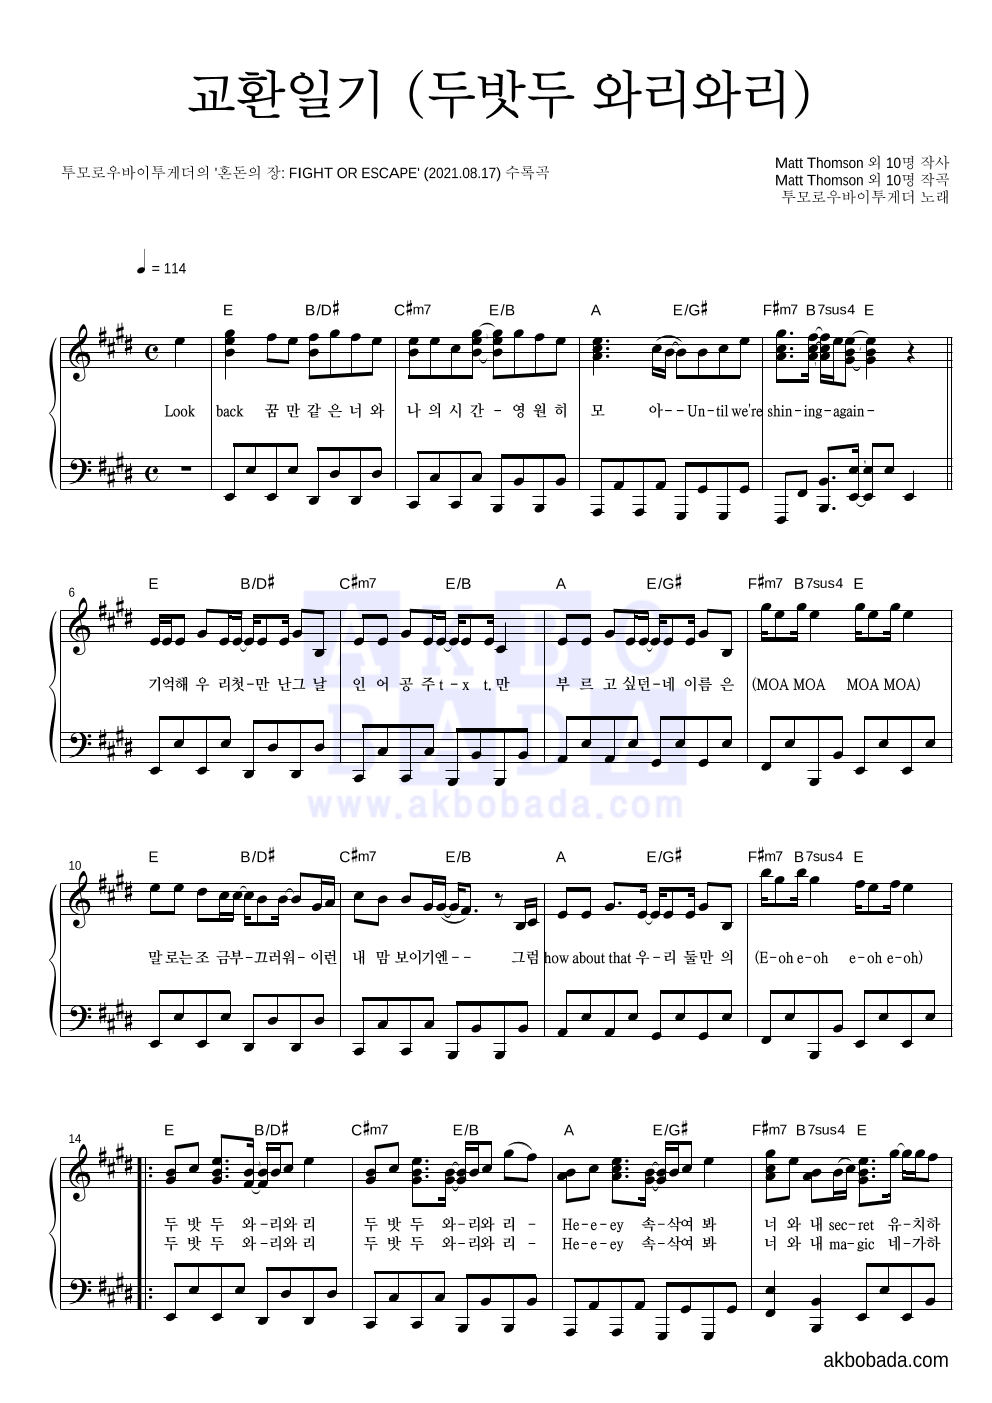 투모로우바이투게더 - 교환일기 (두밧두 와리와리) 피아노 2단 악보 